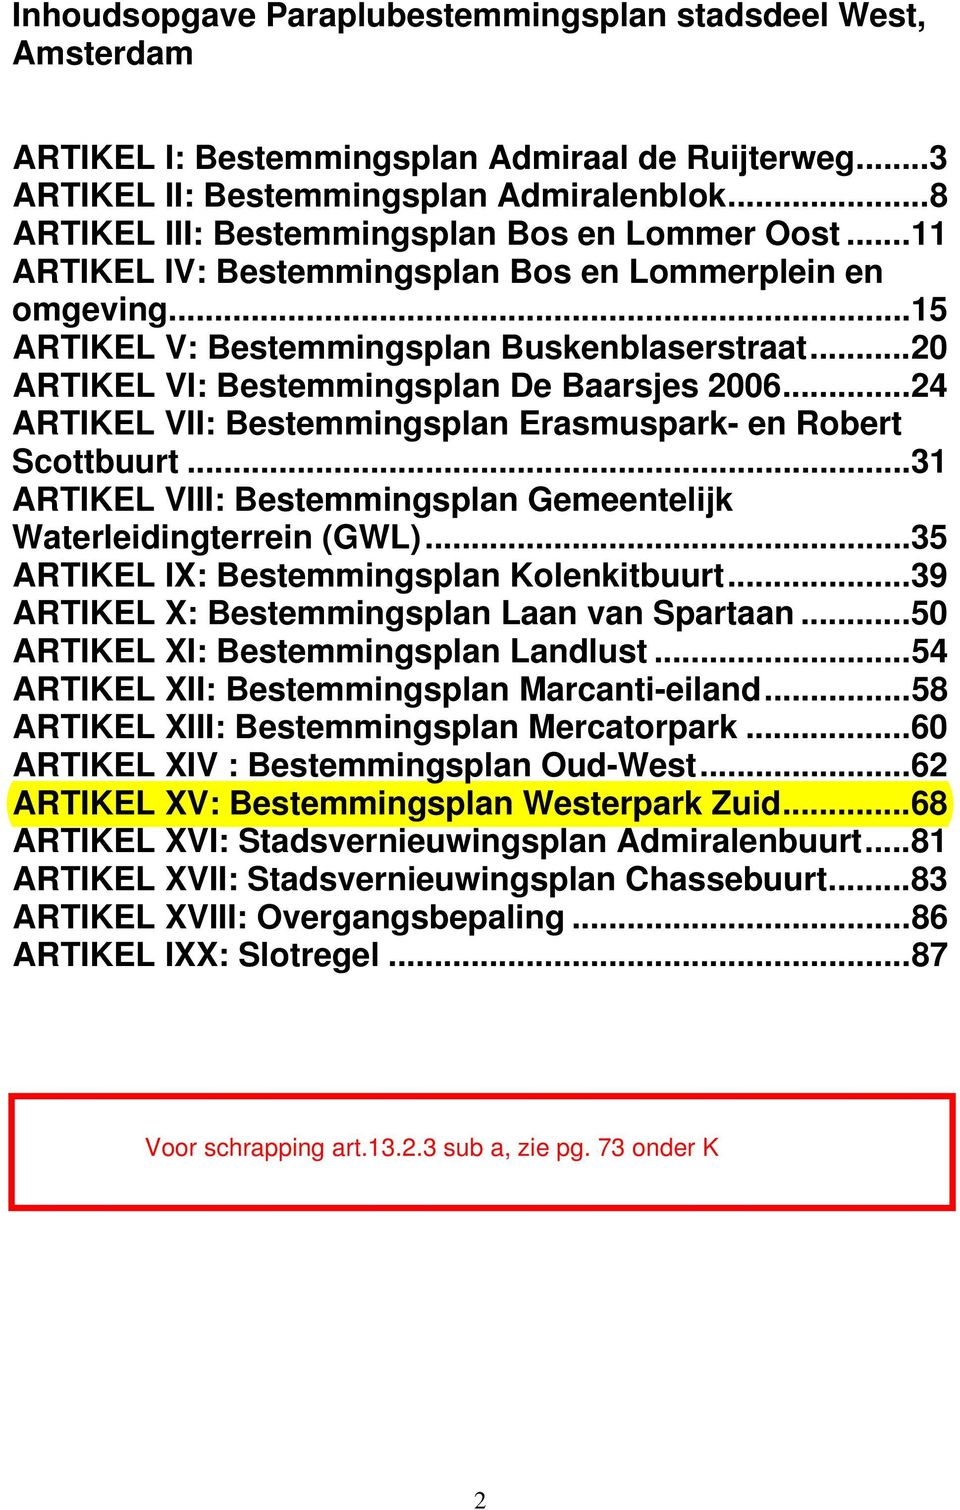 ..20 ARTIKEL VI: Bestemmingsplan De Baarsjes 2006...24 ARTIKEL VII: Bestemmingsplan Erasmuspark- en Robert Scottbuurt...31 ARTIKEL VIII: Bestemmingsplan Gemeentelijk Waterleidingterrein (GWL).